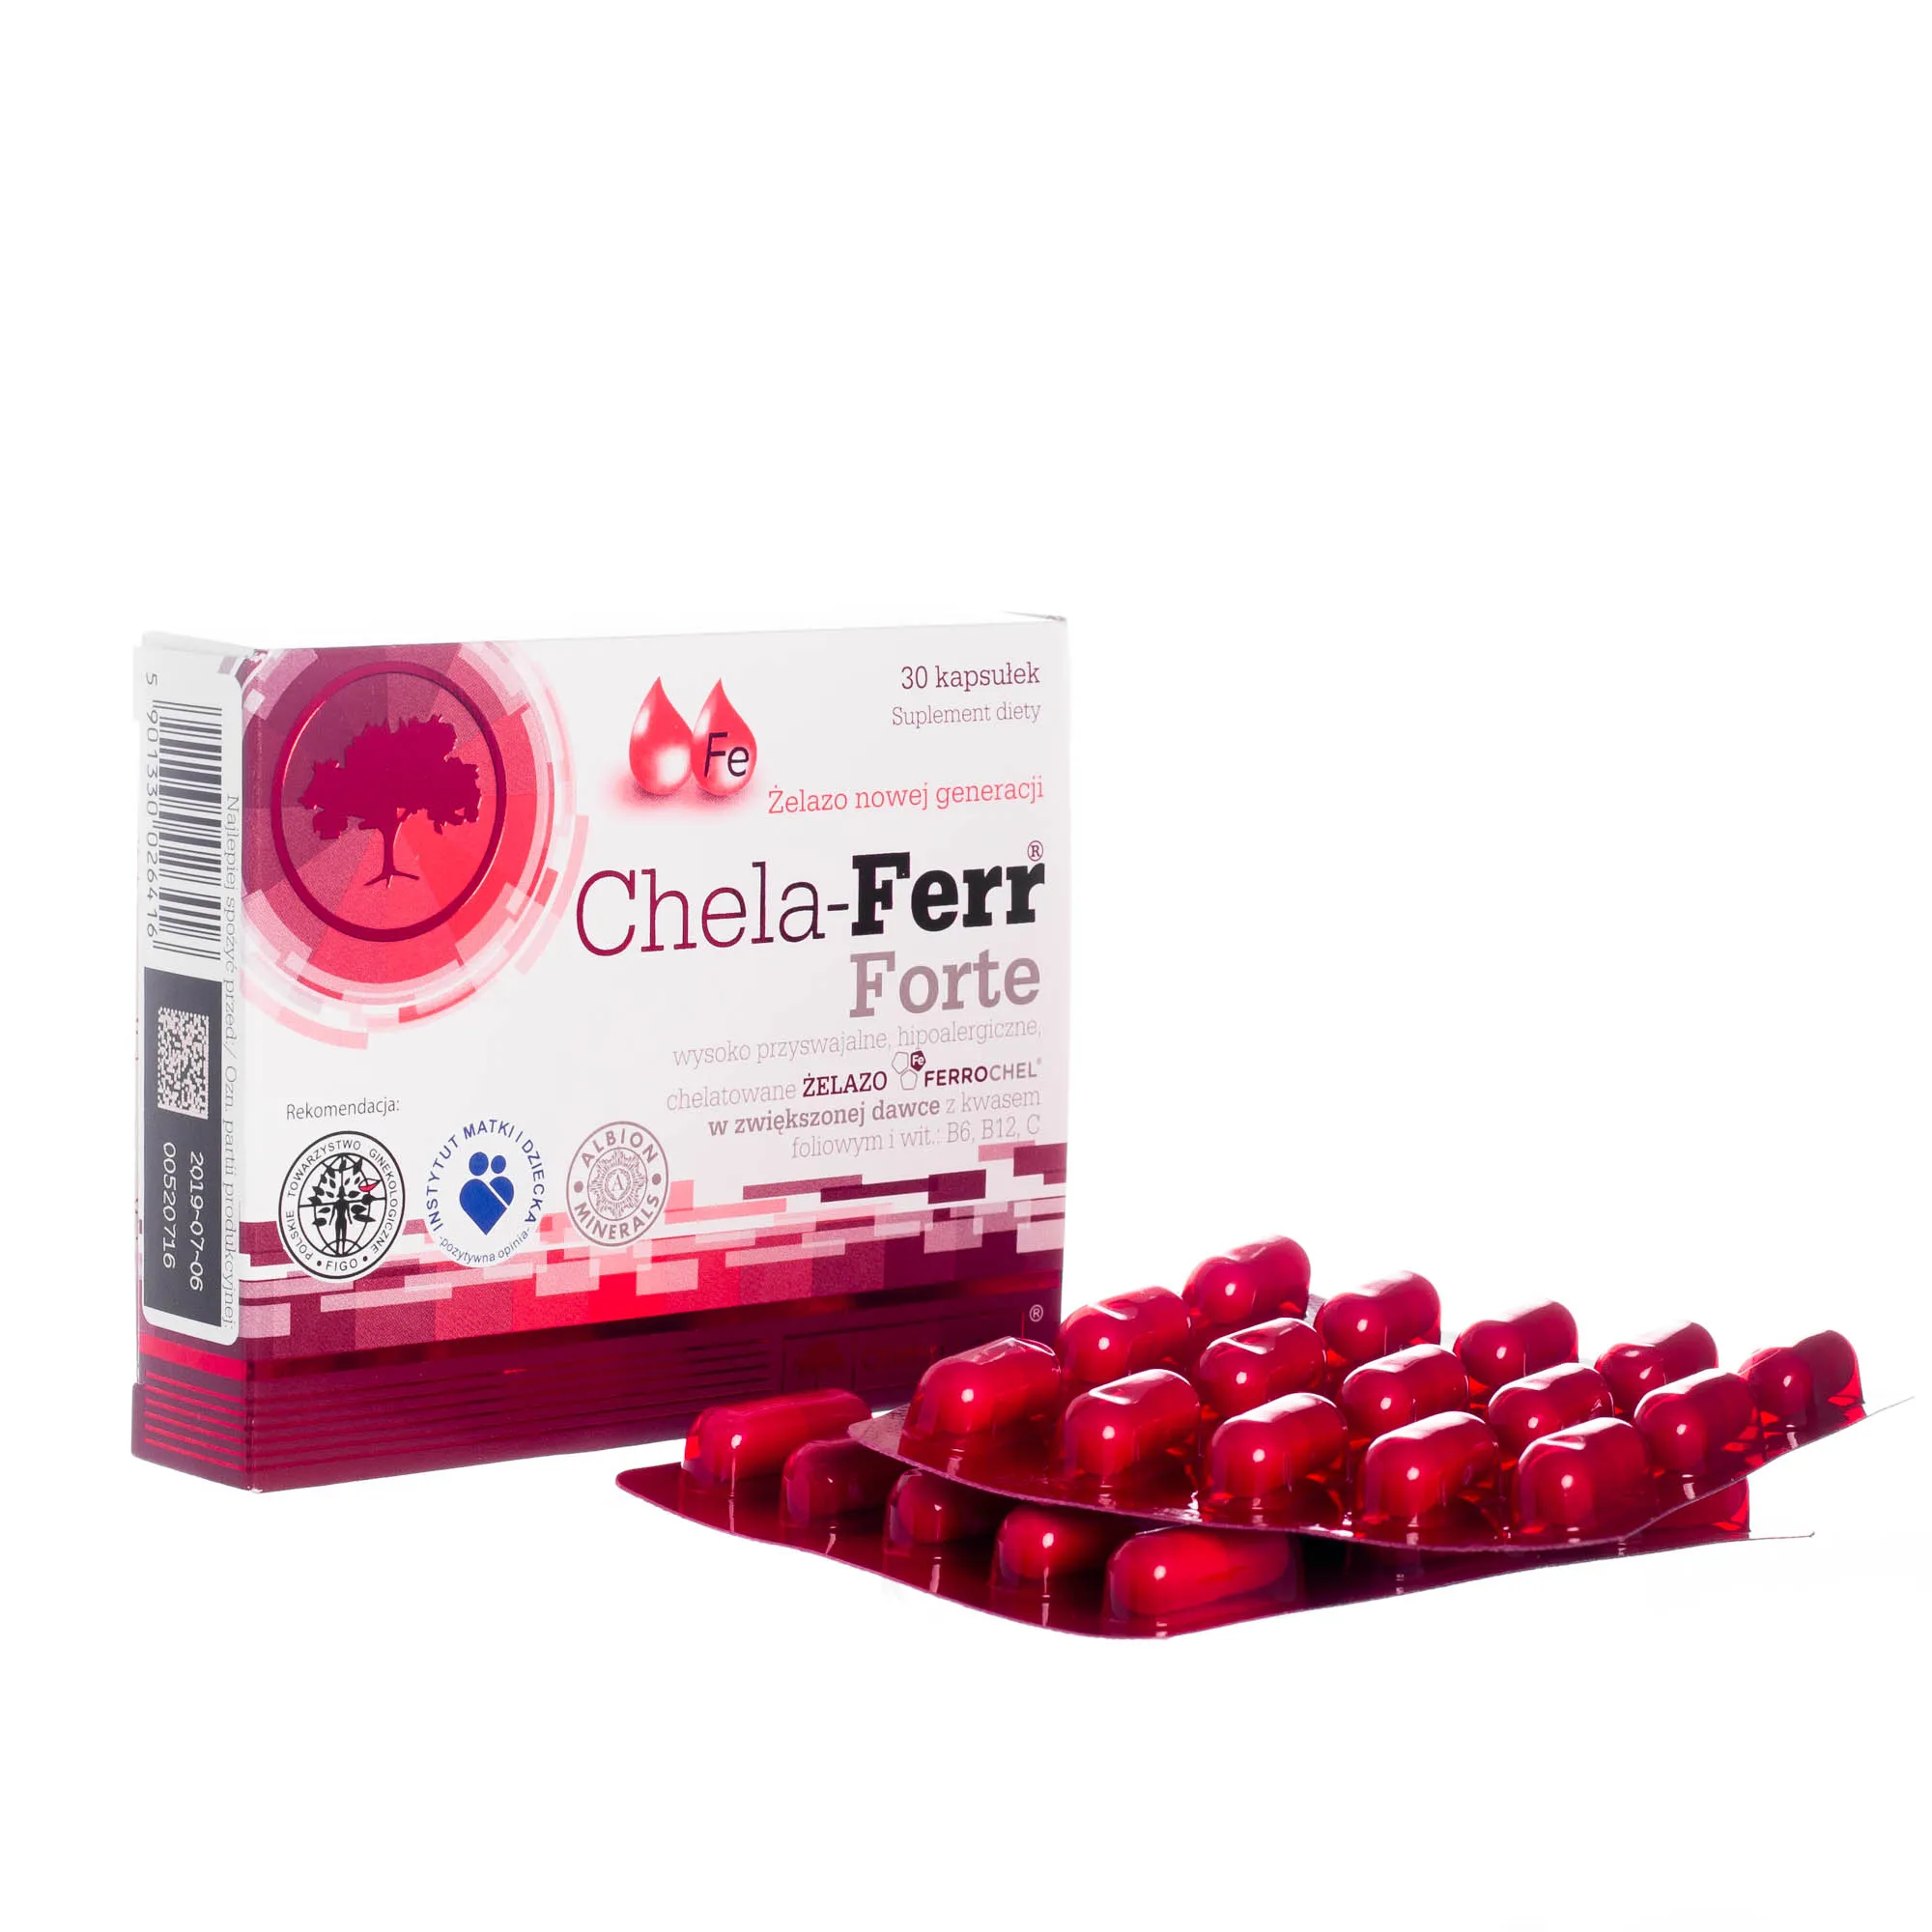 Olimp Chela-Ferr Forte, suplement diety, 30 kapsułek